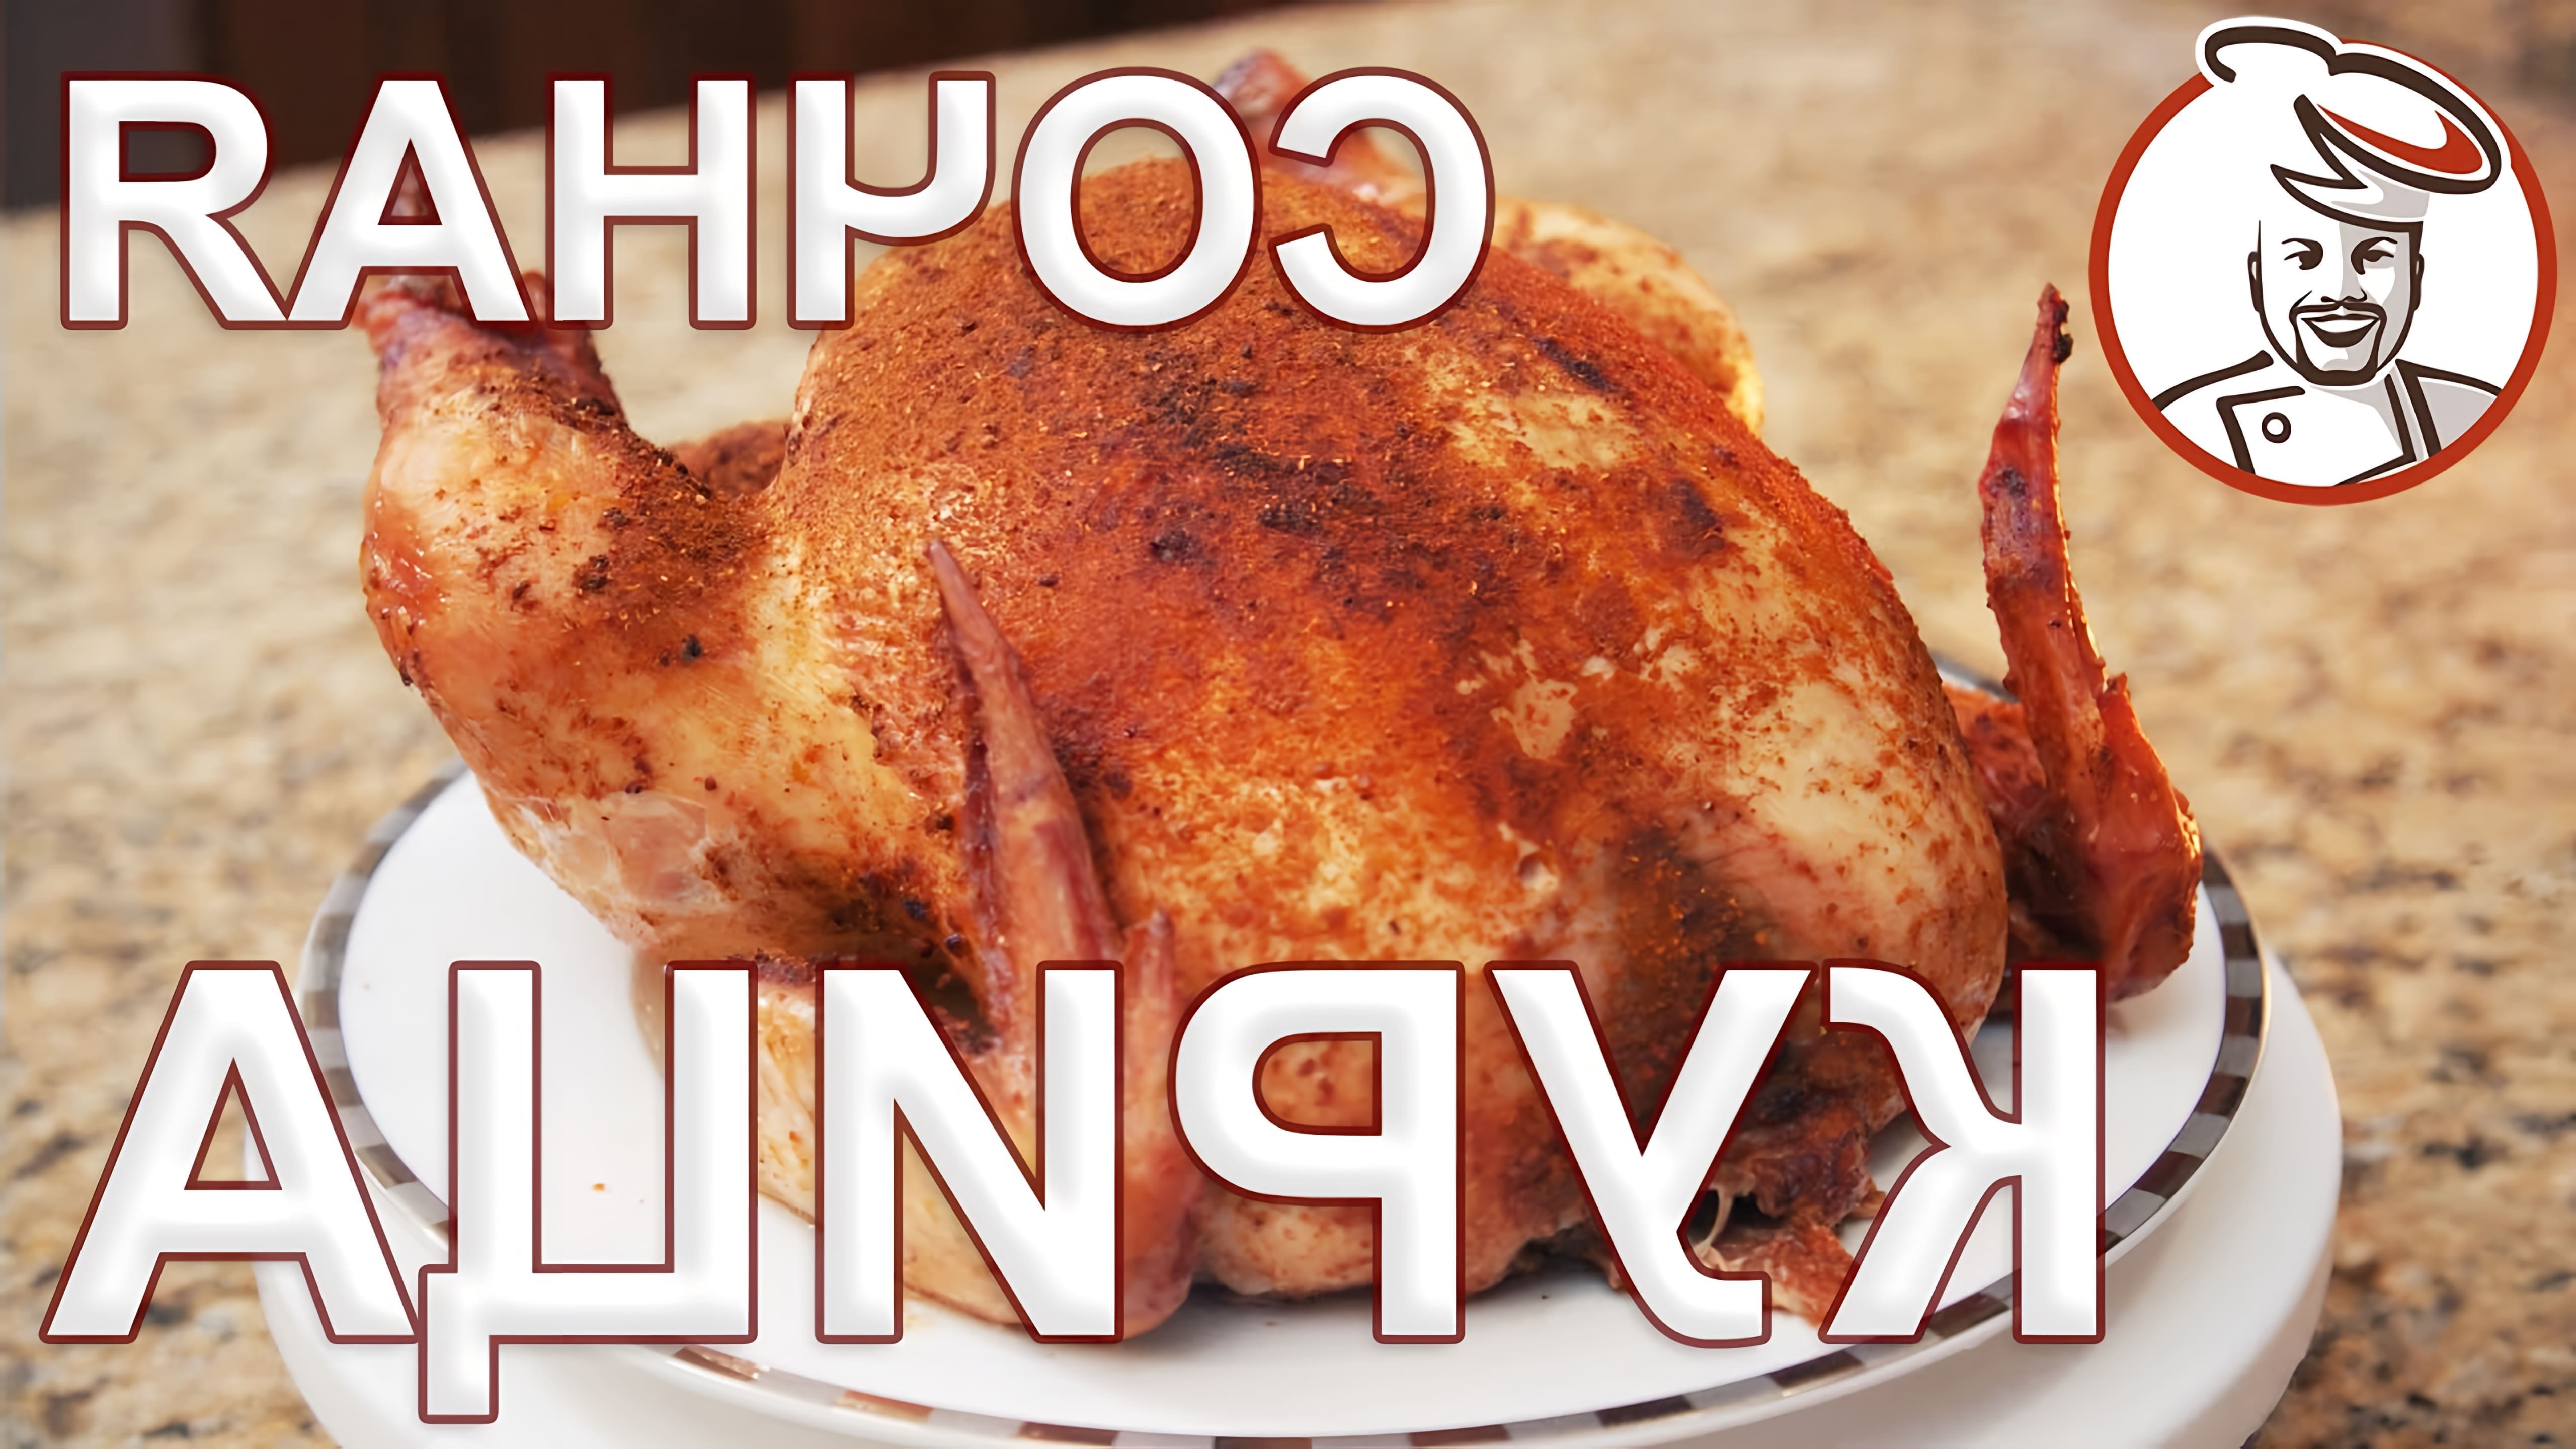 В данном видео представлен рецепт приготовления курицы в духовке с использованием рассола для шприцевания